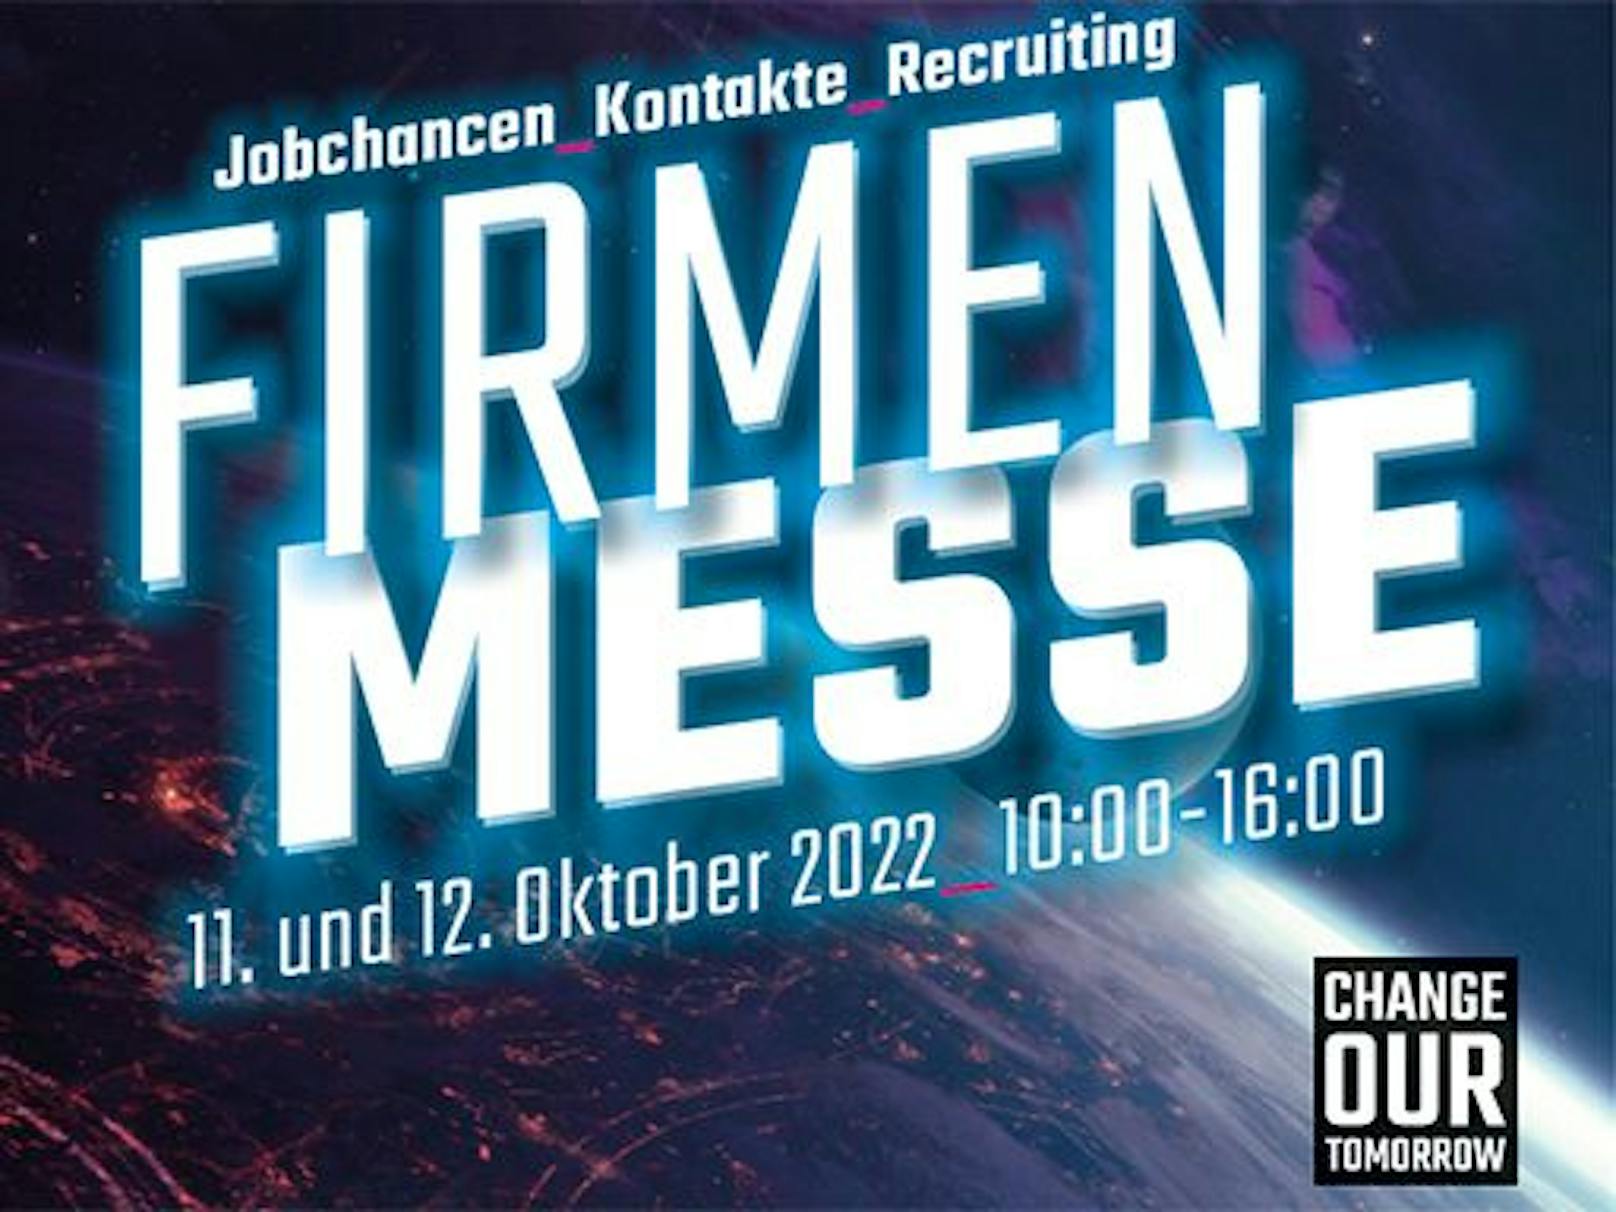 Die Firmenmesse der FH Technikum Wien ist in gewohnter Form zurück und bietet Studierenden, Alumni und Interessierten am 11. und 12. Oktober 2022 die Chance mit über 100 Unternehmen in Kontakt zu treten.